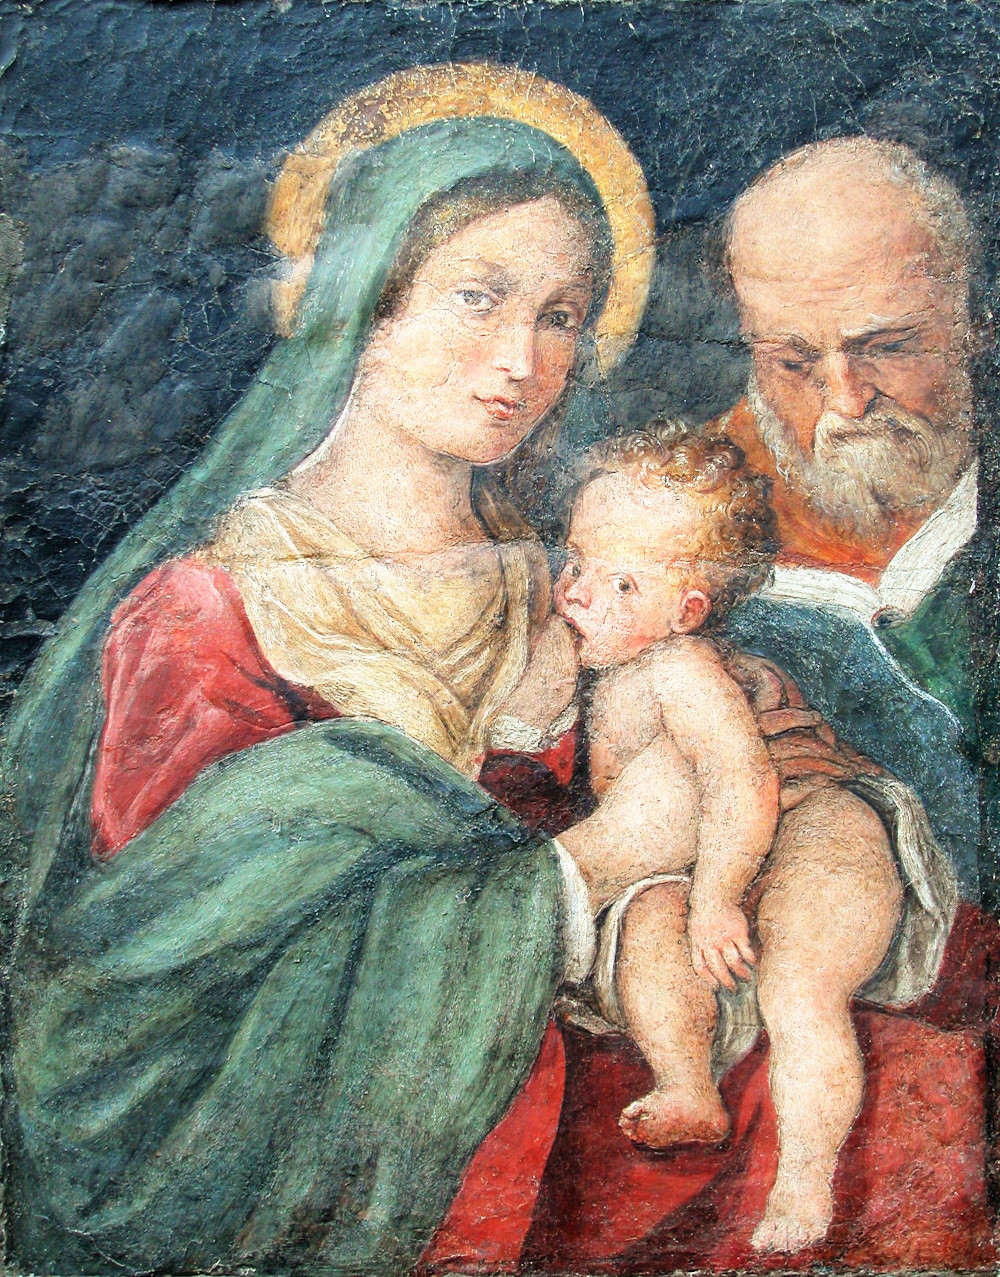 Sacra Famiglia detta Madonna della Misericordia - Scuola Carracci